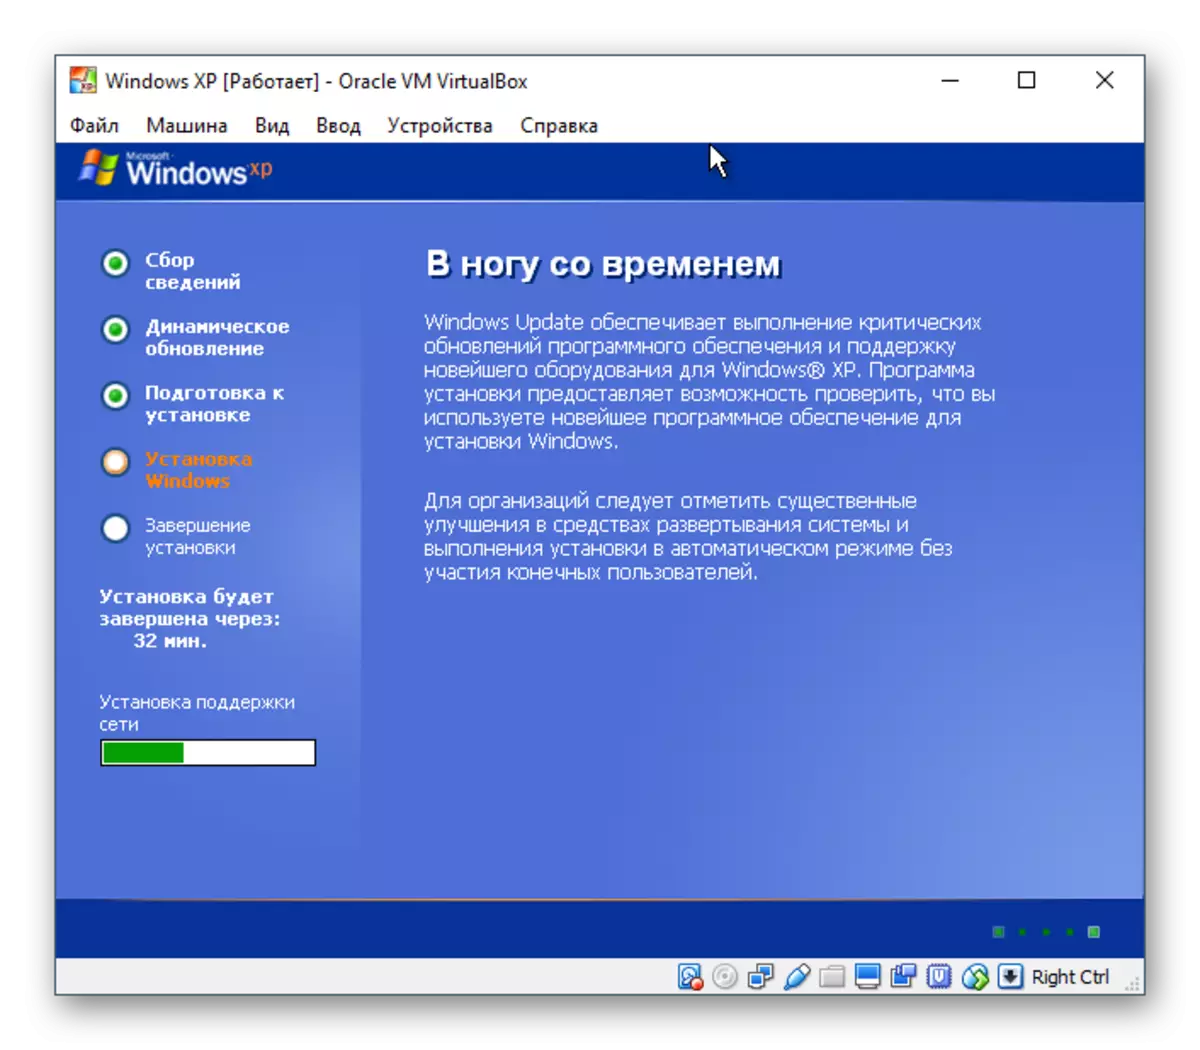 వర్చువల్బాక్స్లో Windows XP నెట్వర్క్ సెట్టింగులు